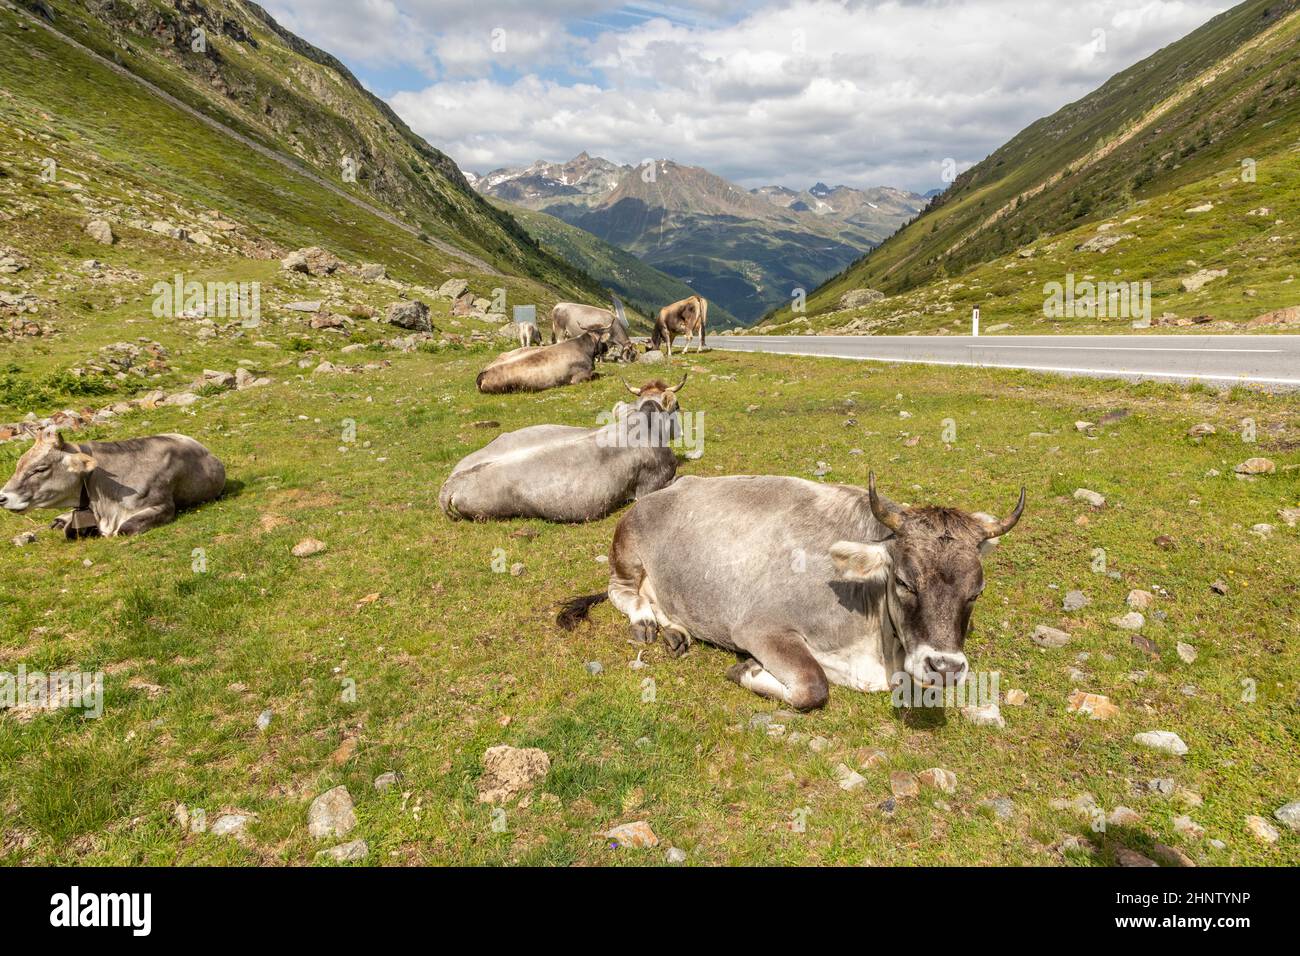 Vaches en pâturage dans les montagnes, Passo Rombo - Timmelsjoch, frontière italo-autrichienne, Europe Banque D'Images